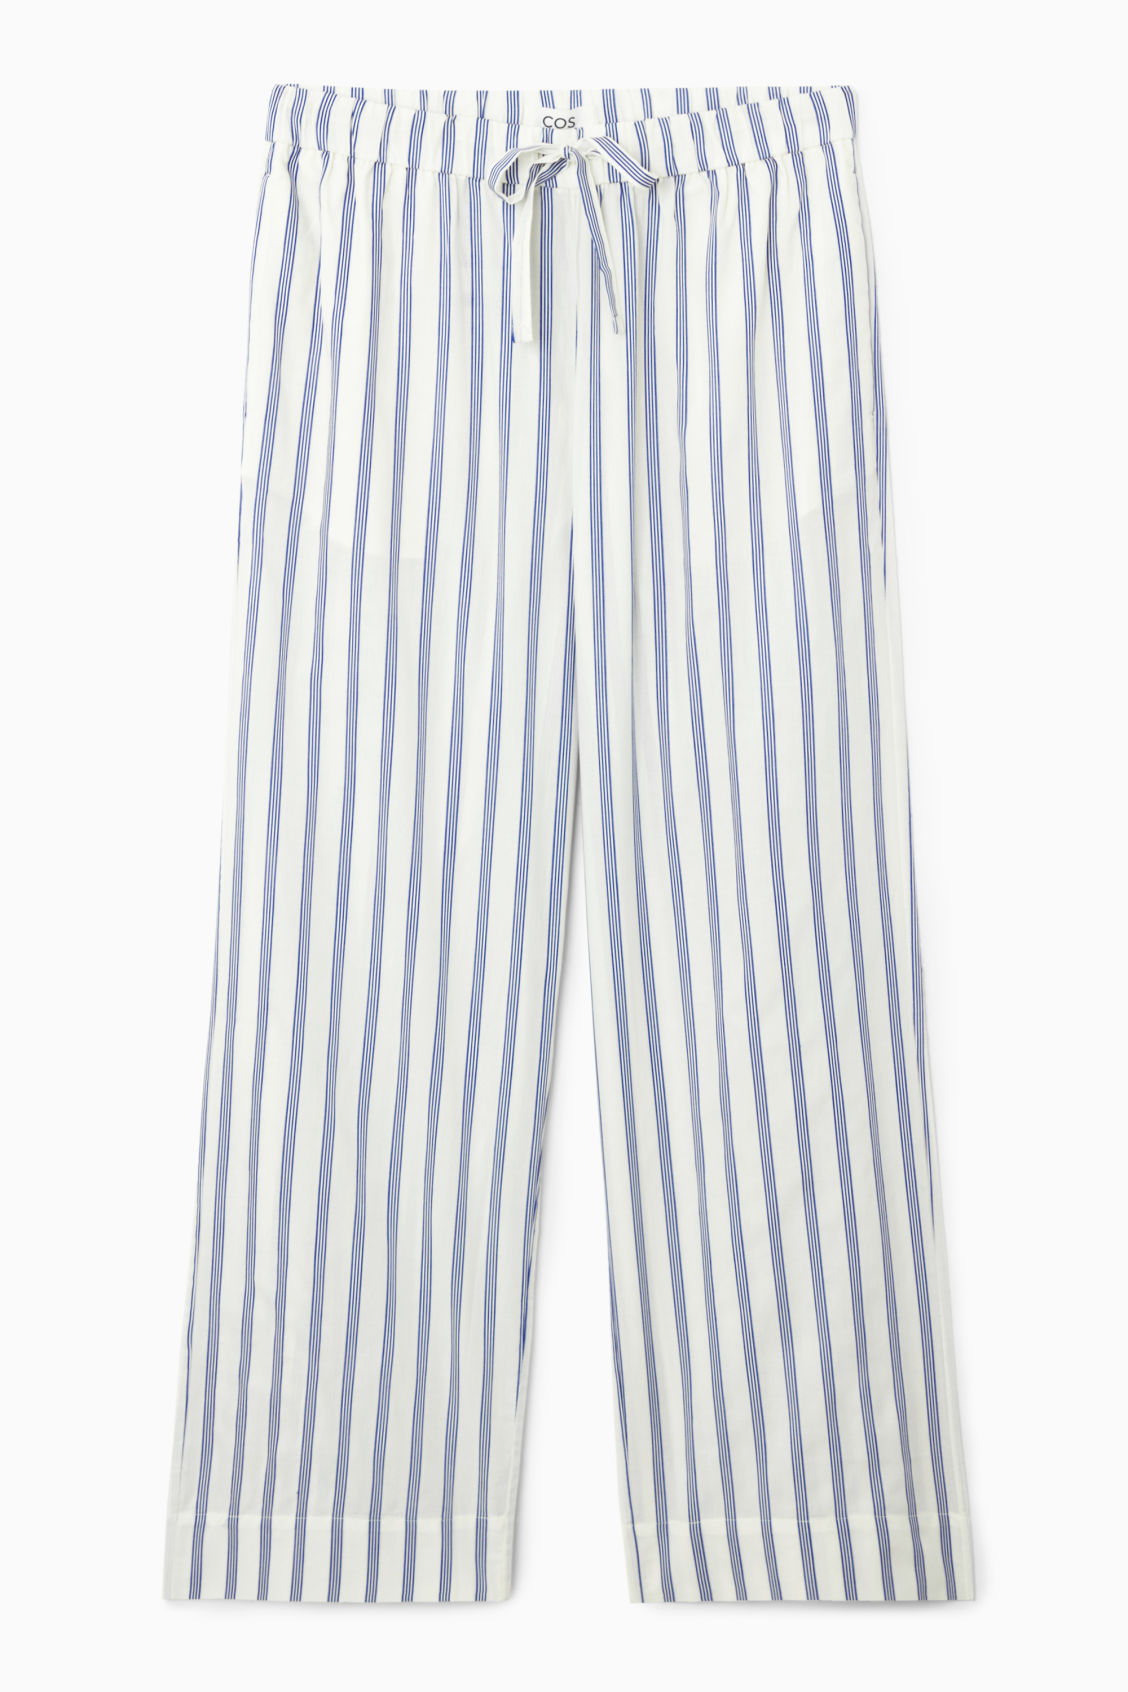 COS, Striped Poplin Pajama Pants